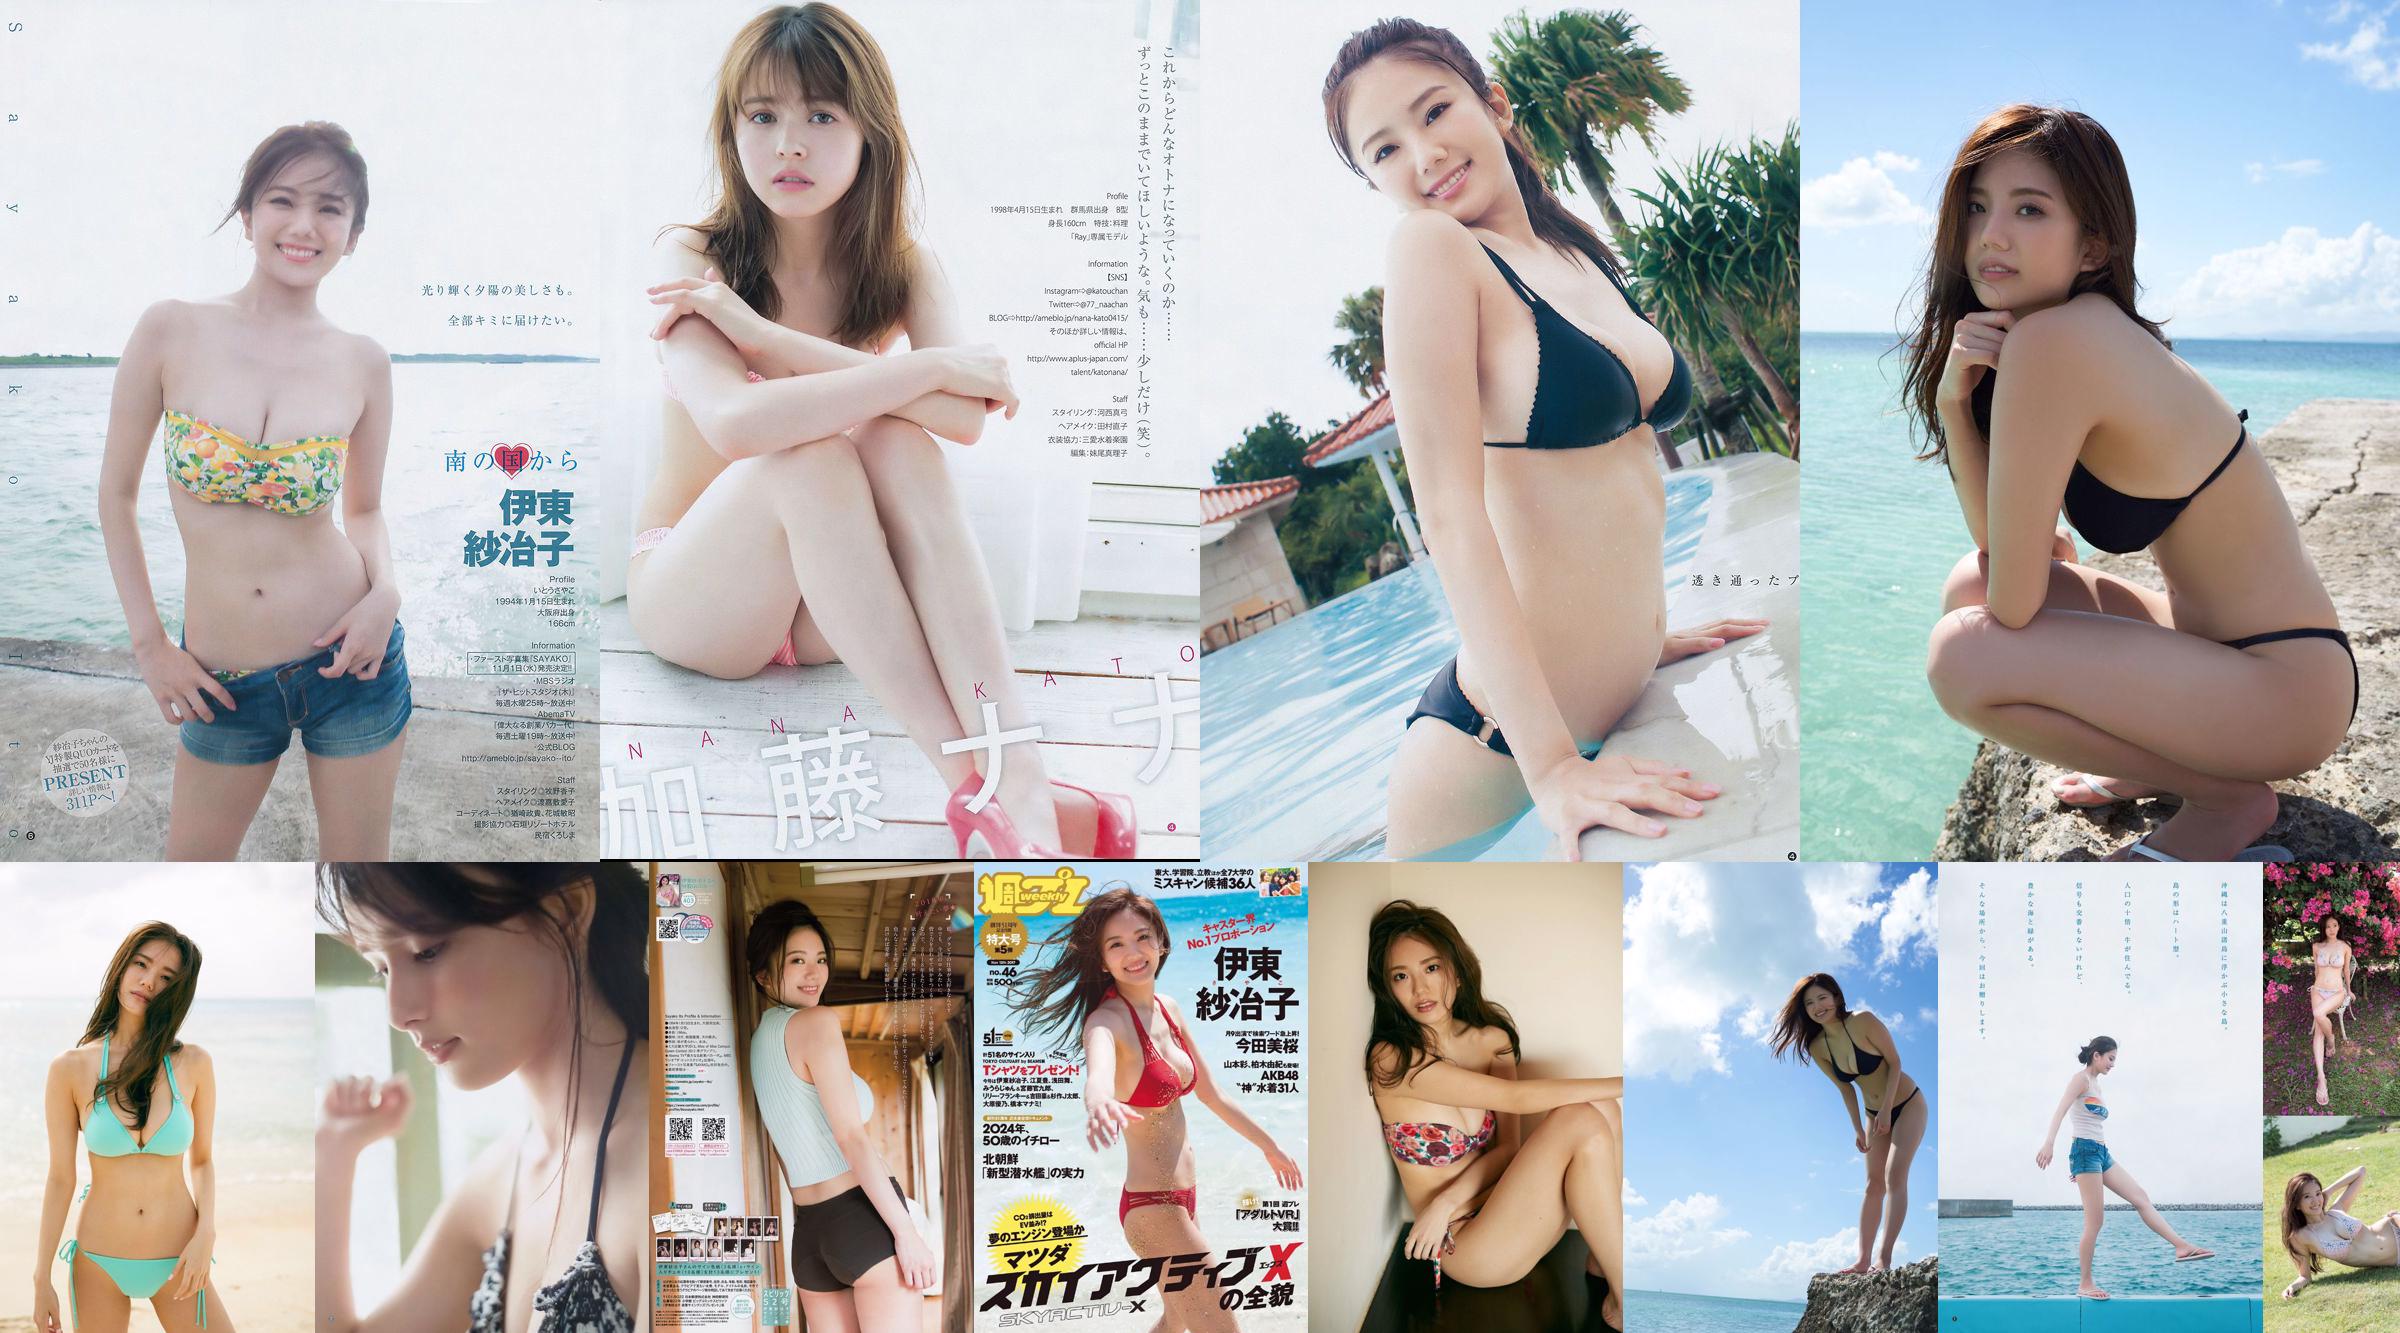 Ito Sayeko, Mima Reiko, Sugimoto Yumi, Sato Reina, Yoshiki りさ Toyama Akiko, Naninao [Weekly Playboy] 2016 No.36 Photo Magazine No.4afa28 Page 4